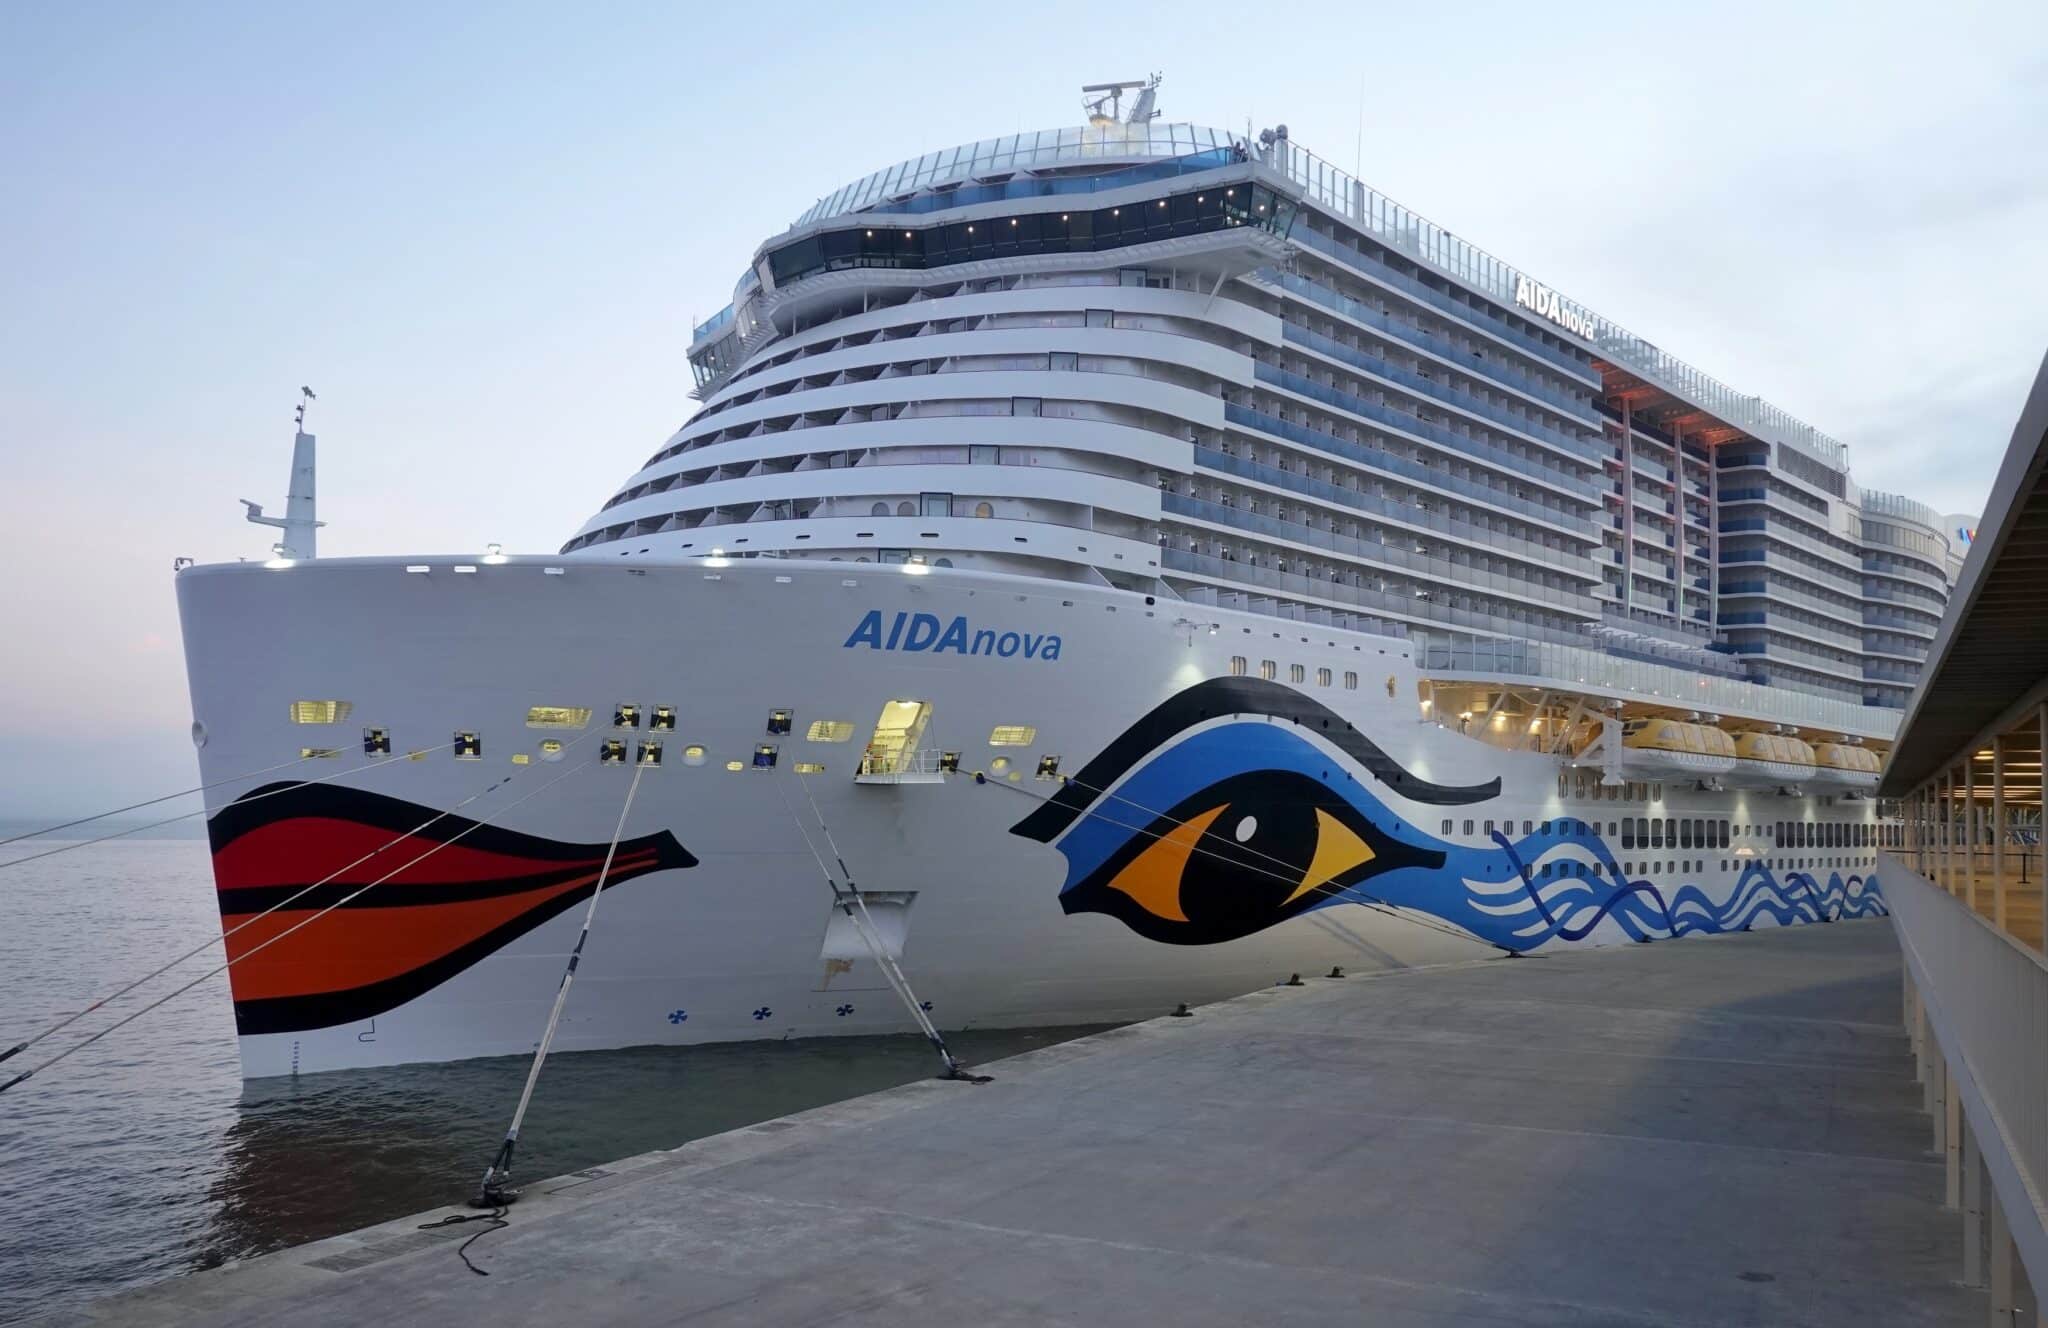 Portugal, Lisboa: el crucero AIDAnova está atracado en la terminal de cruceros de la capital portuguesa tras ser detenido